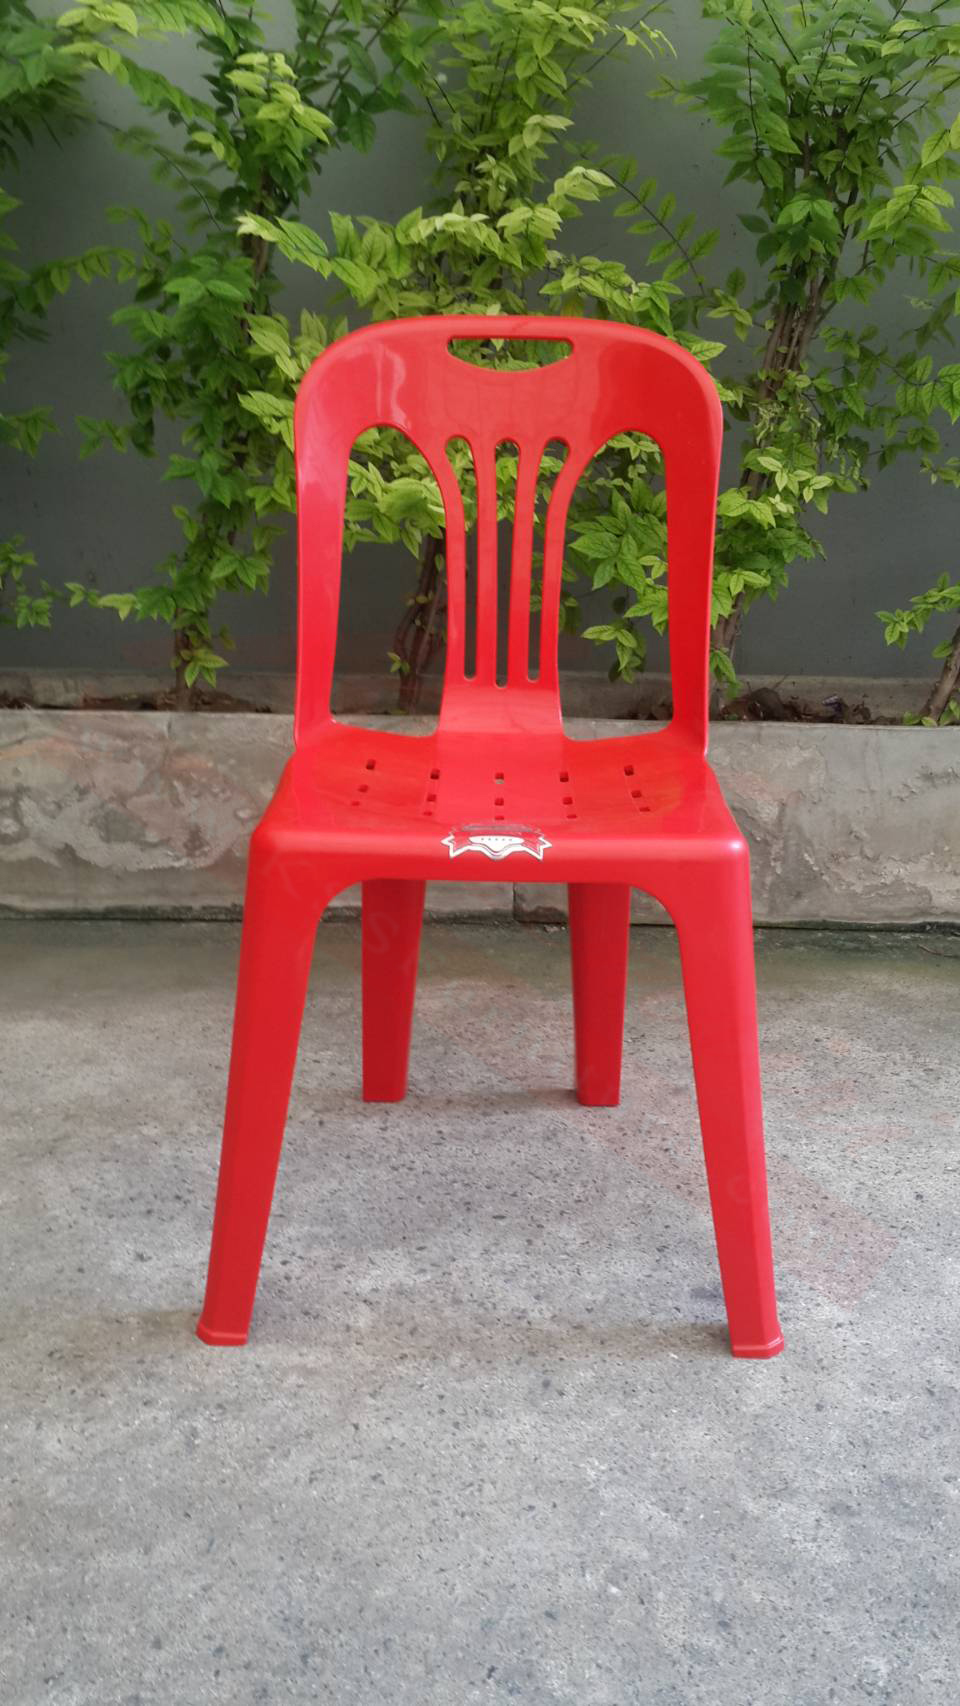 56042::PN9155A(กล่องละ 10 ตัว)::เก้าอี้พลาสติก ขนาด500x520x810มม. สามารถวางซ้อนกันได้ มีให้เลือก2สี น้ำเงิน,แดง เก้าอี้พลาสติก ไพรโอเนีย ไพรโอเนีย เก้าอี้พลาสติก